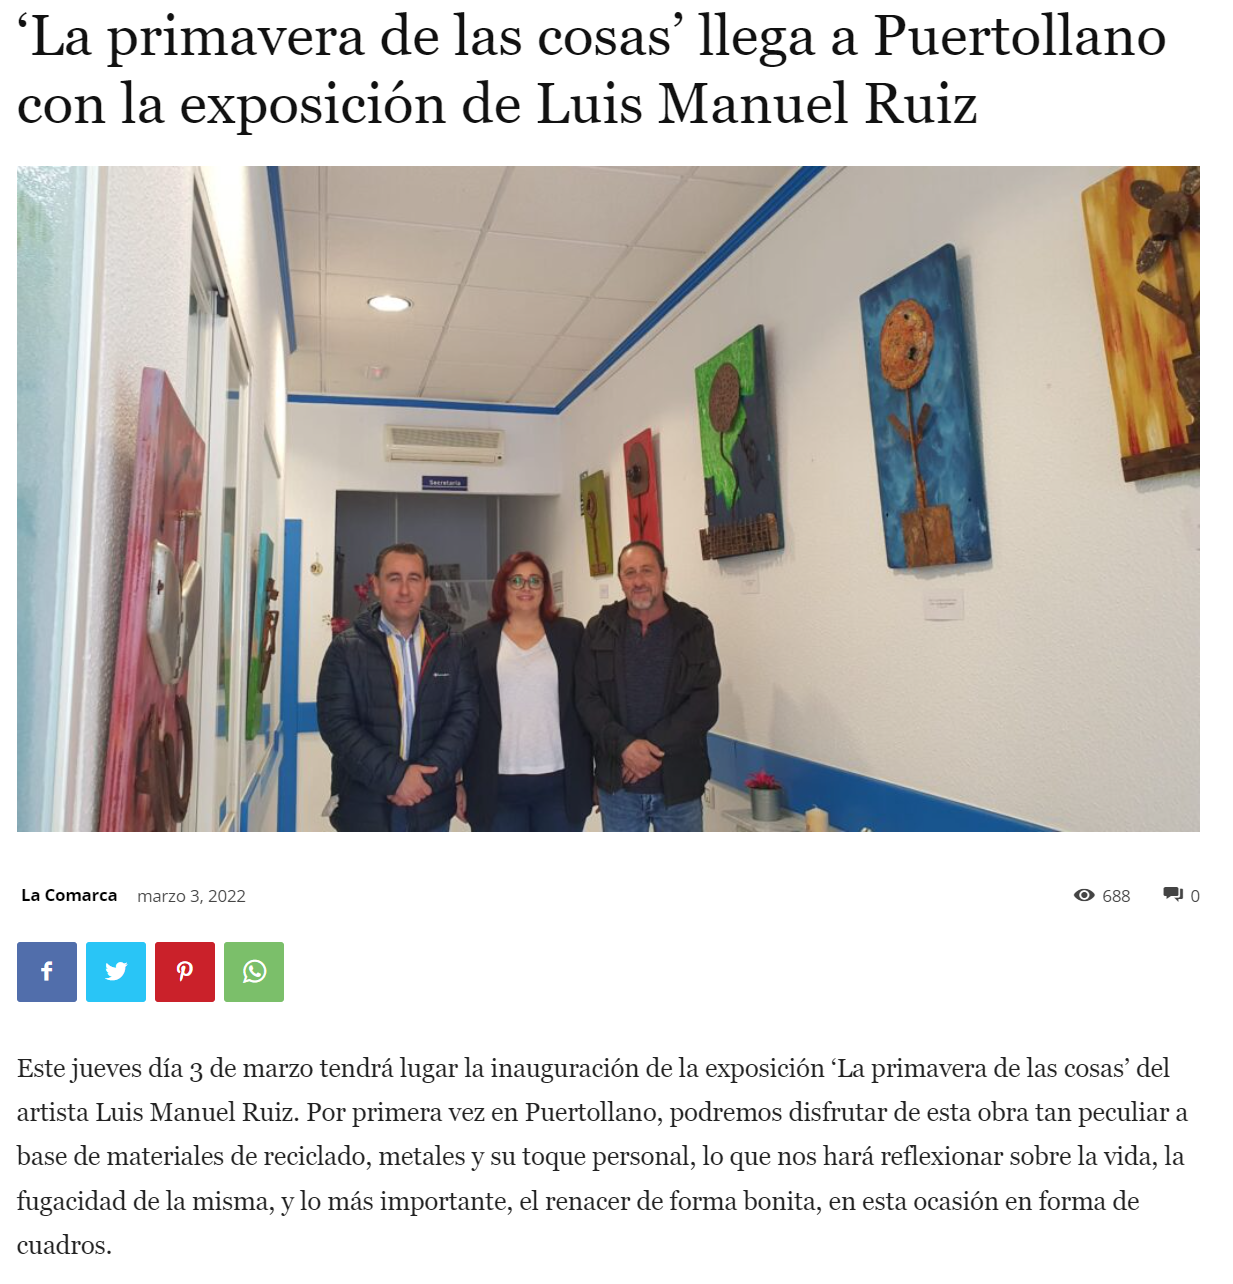 ‘La primavera de las cosas’ llega a Puertollano con la exposición de Luis Manuel Ruiz